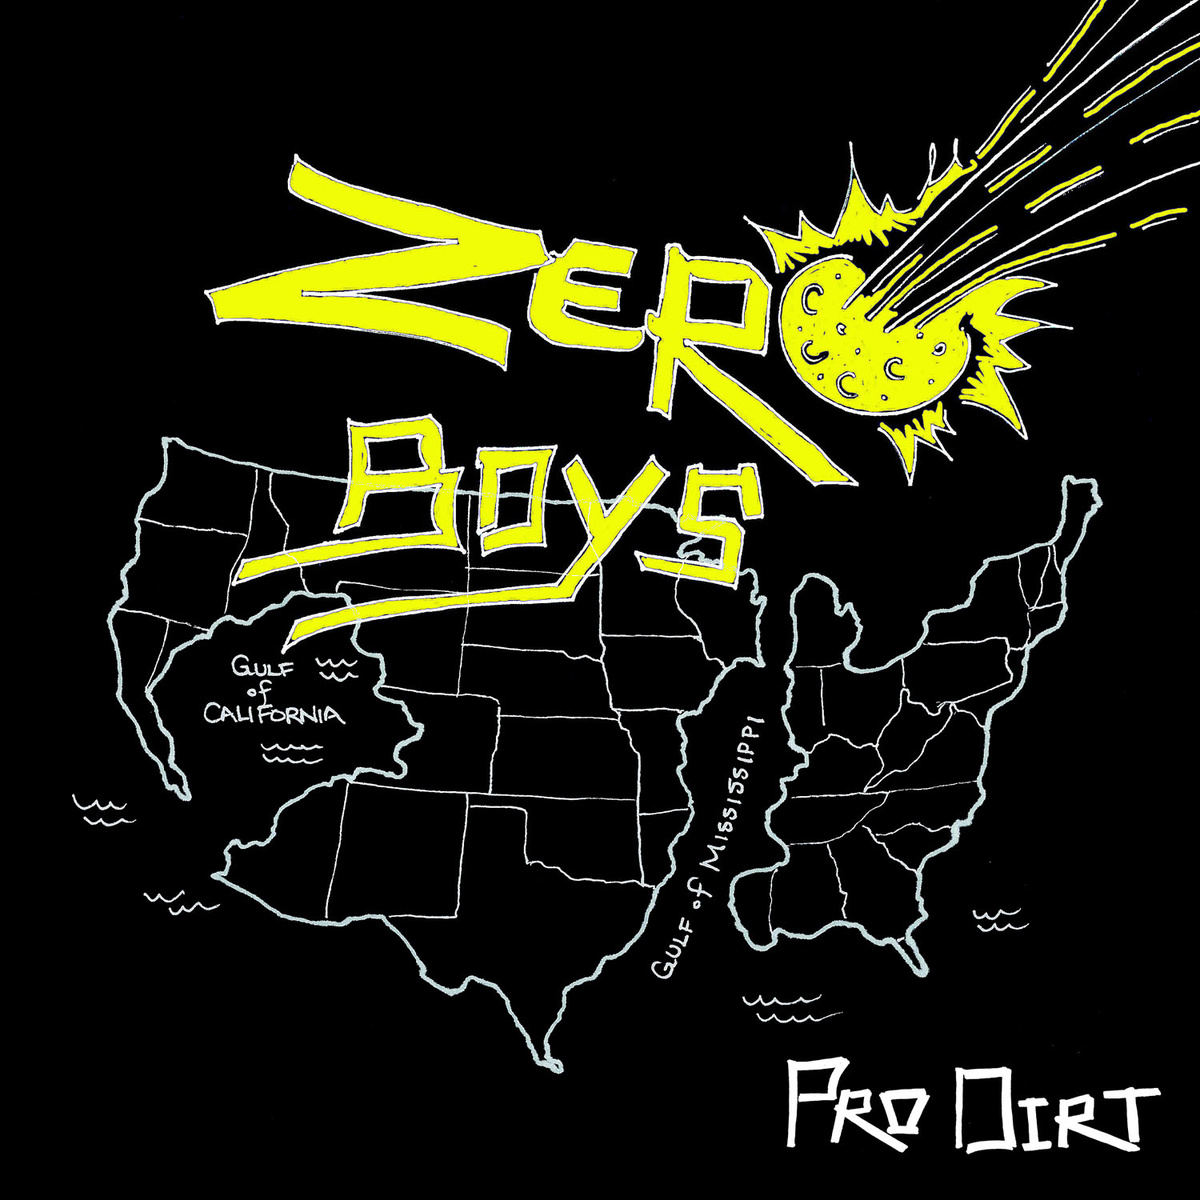 EP Pro Dirt dos Zero Boys